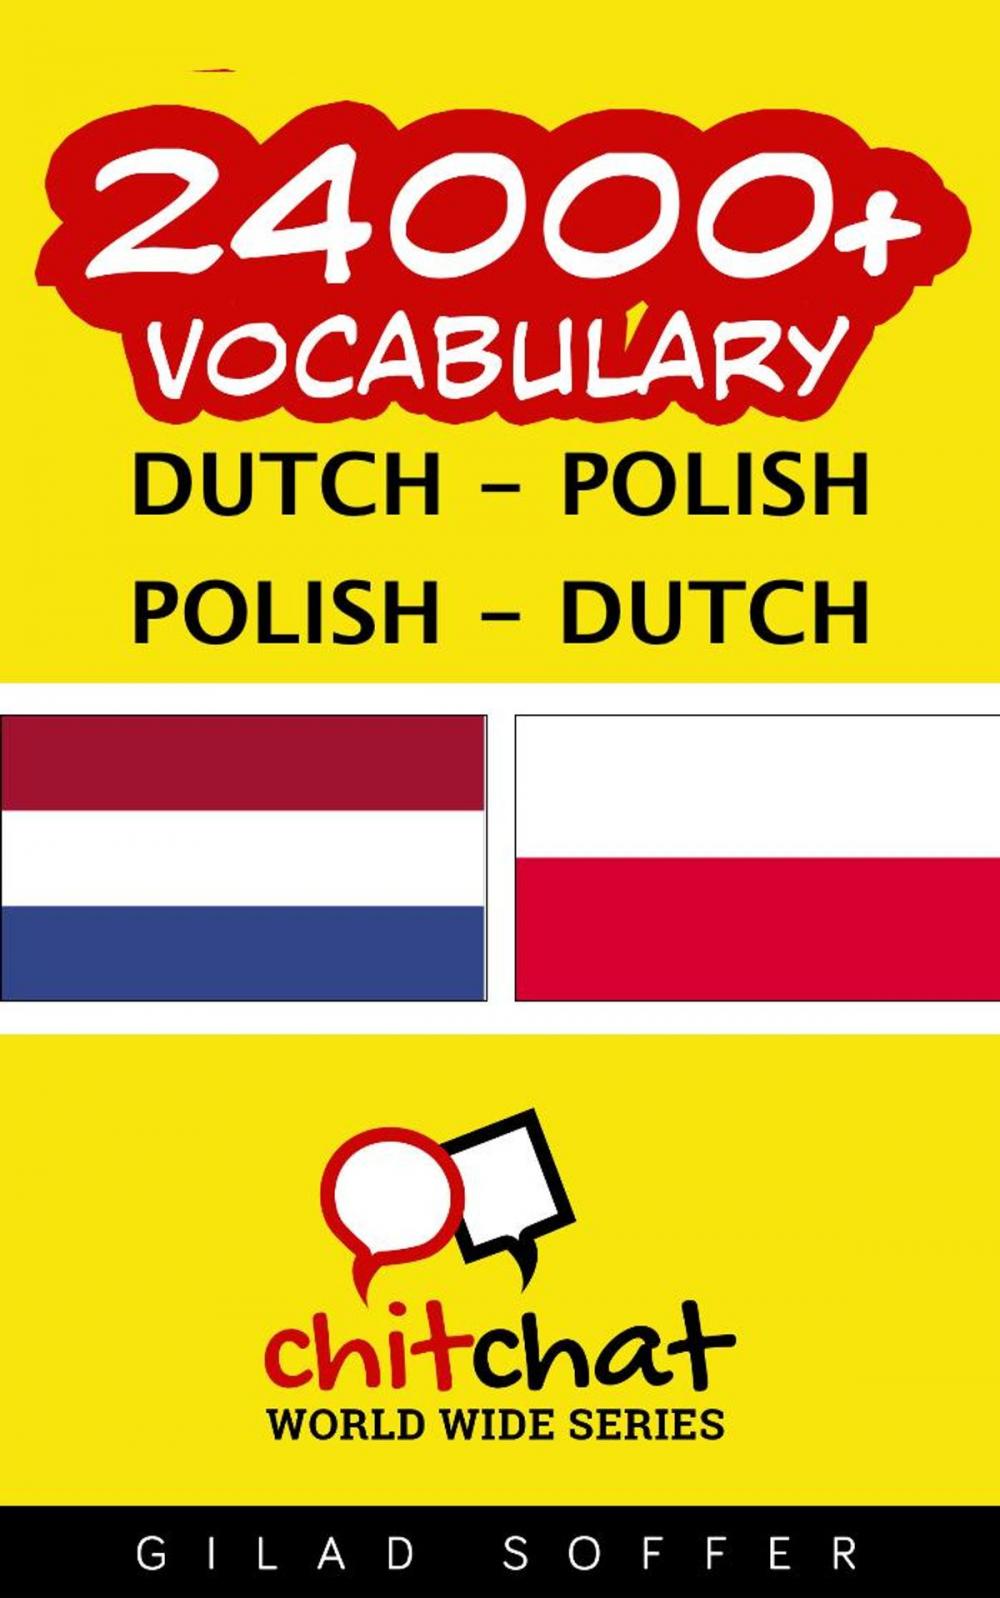 Big bigCover of 24000+ Vocabulary Dutch - Polish